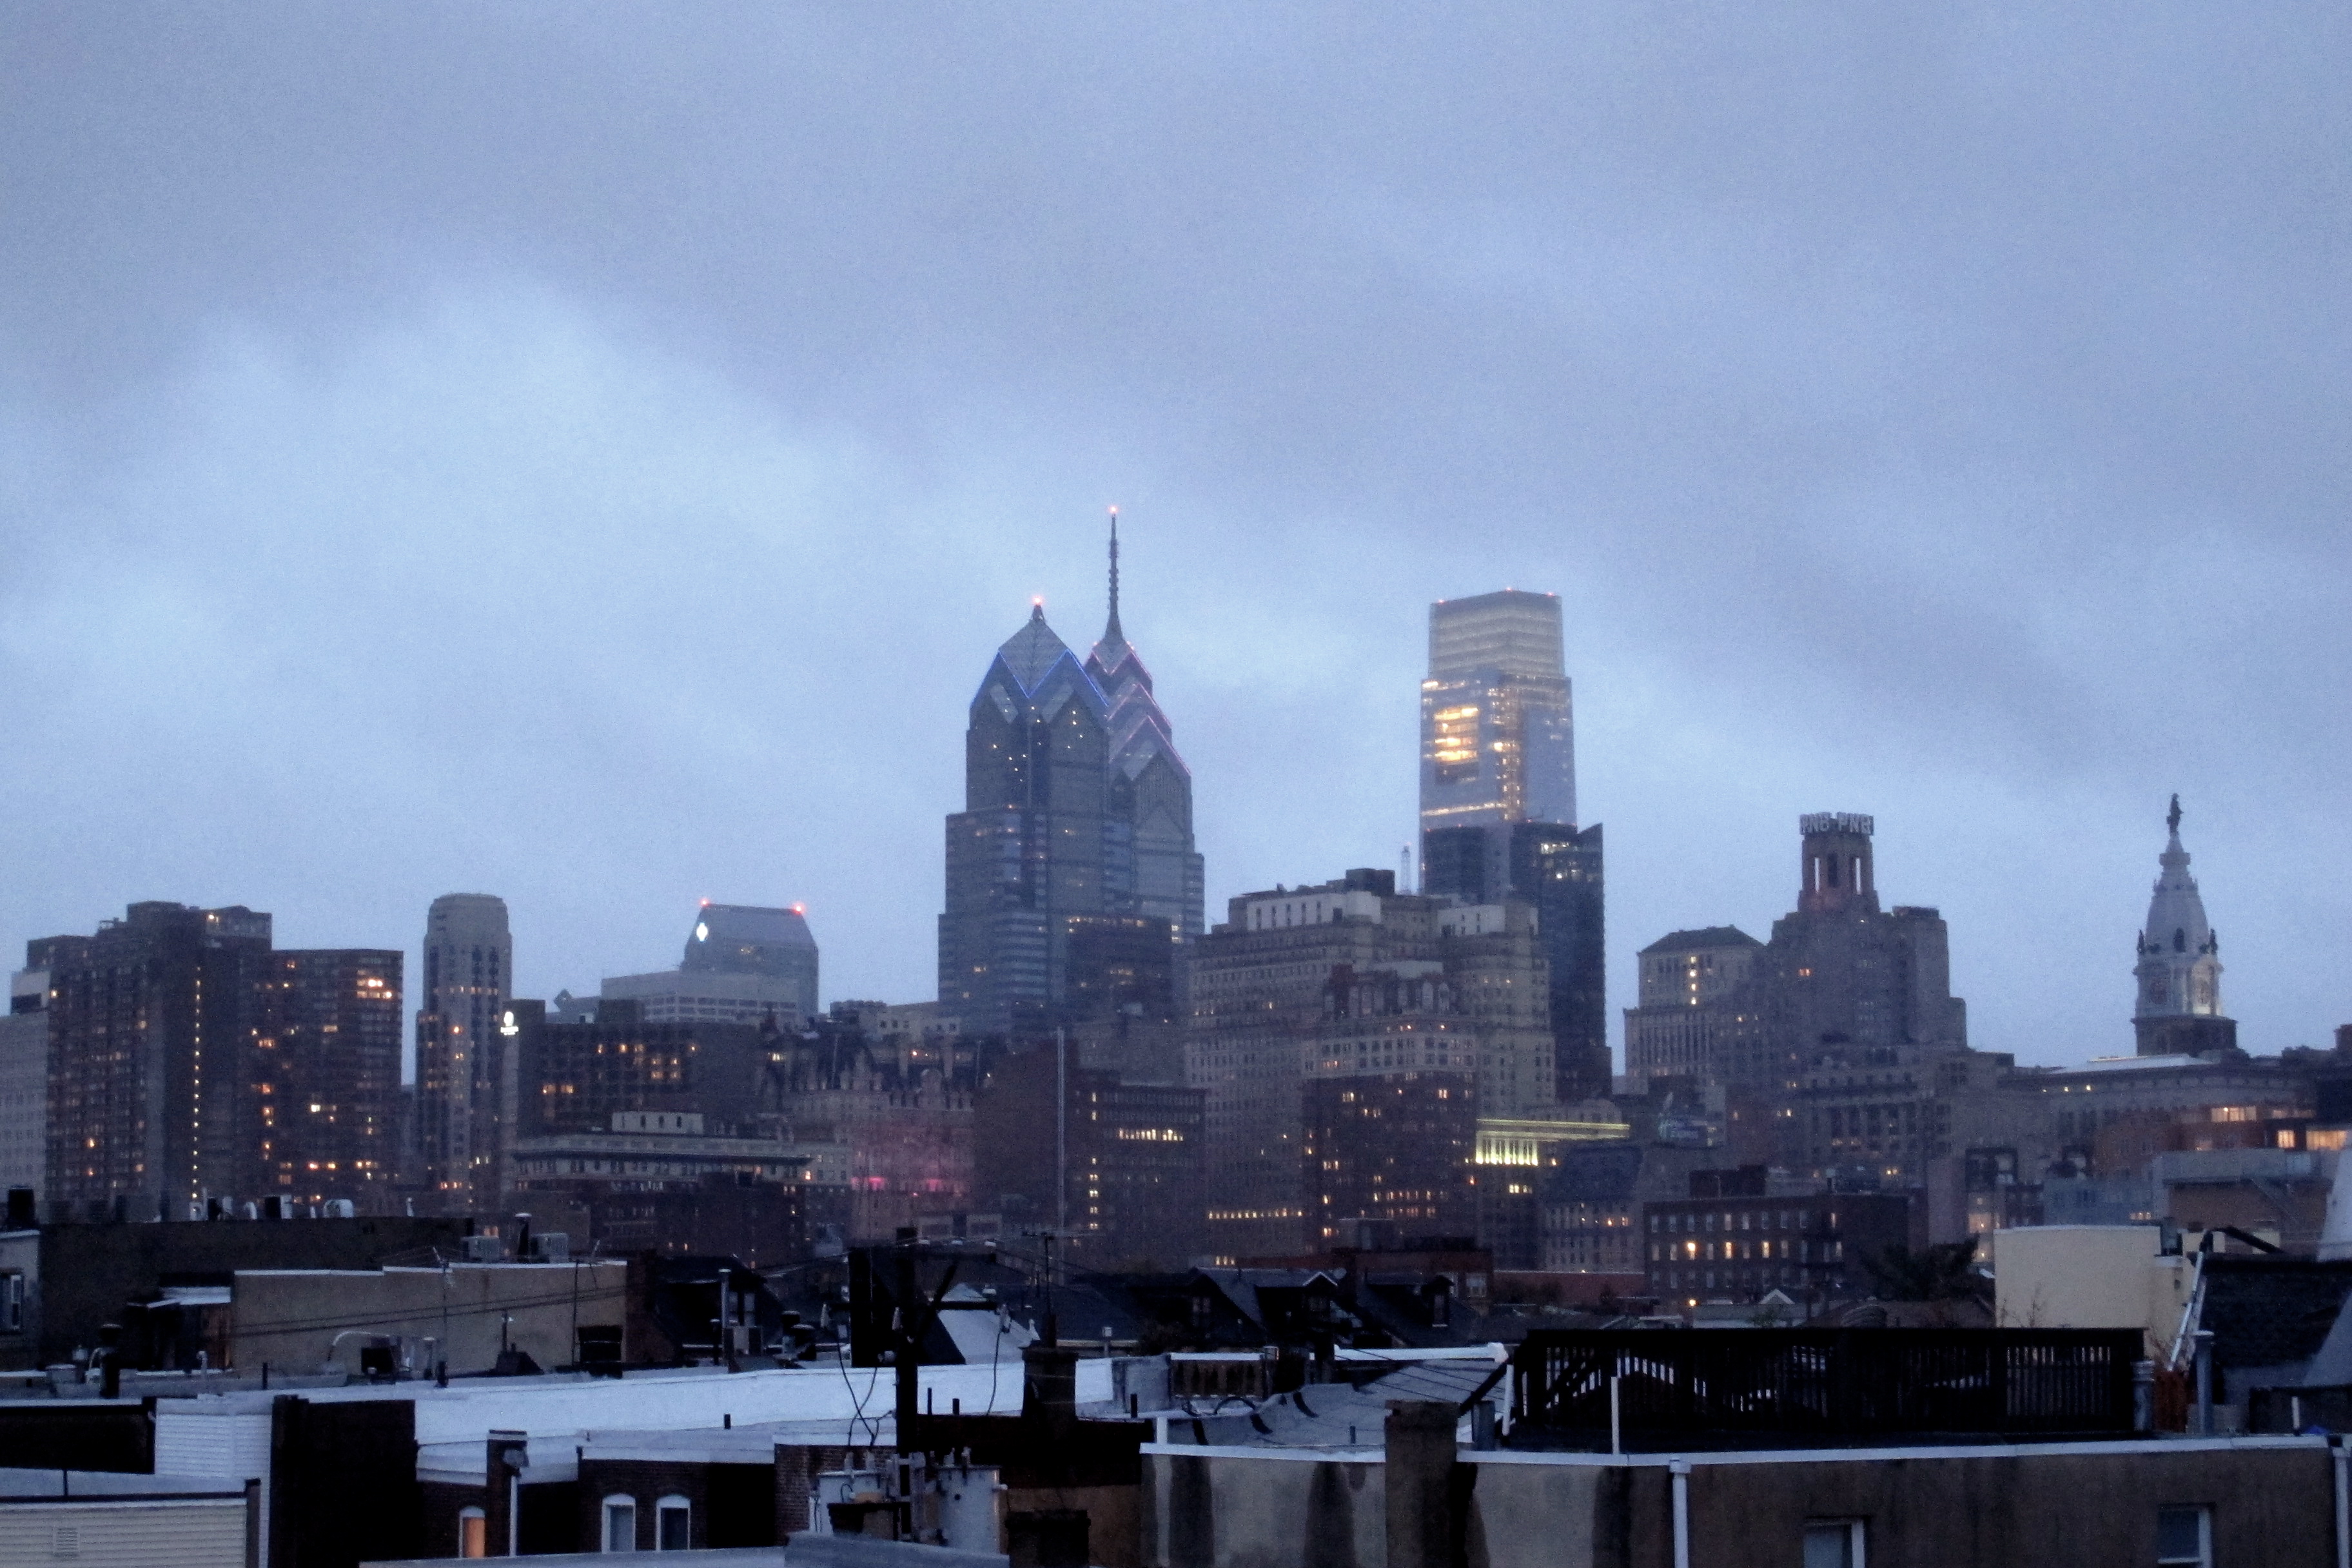 Obligatory moody skyline shot, 5:03pm.